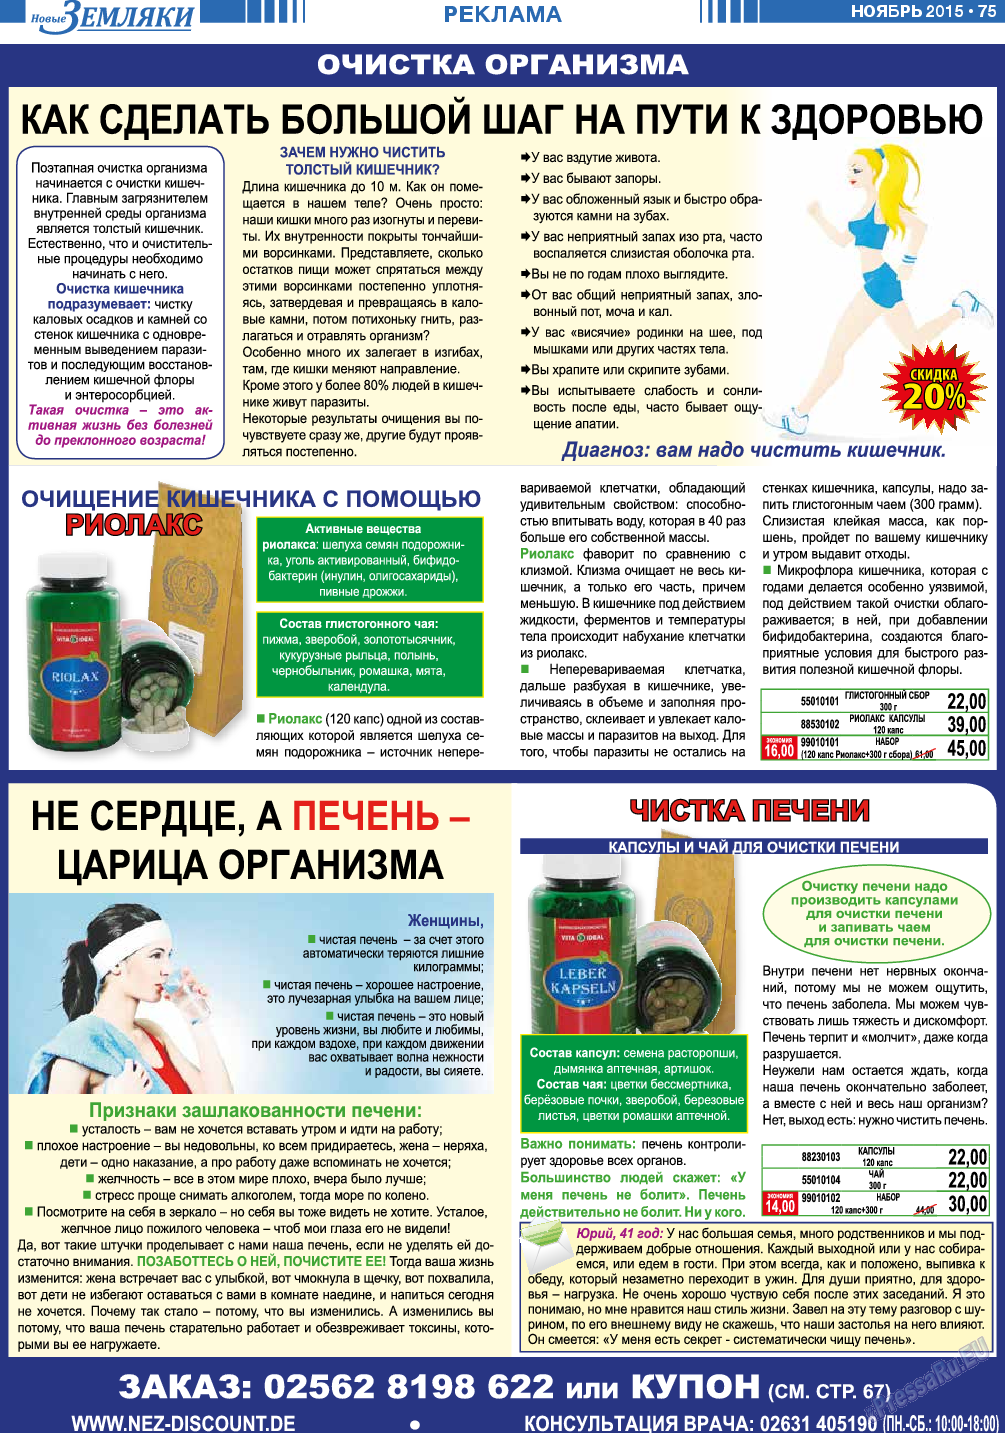 Новые Земляки, газета. 2015 №11 стр.75